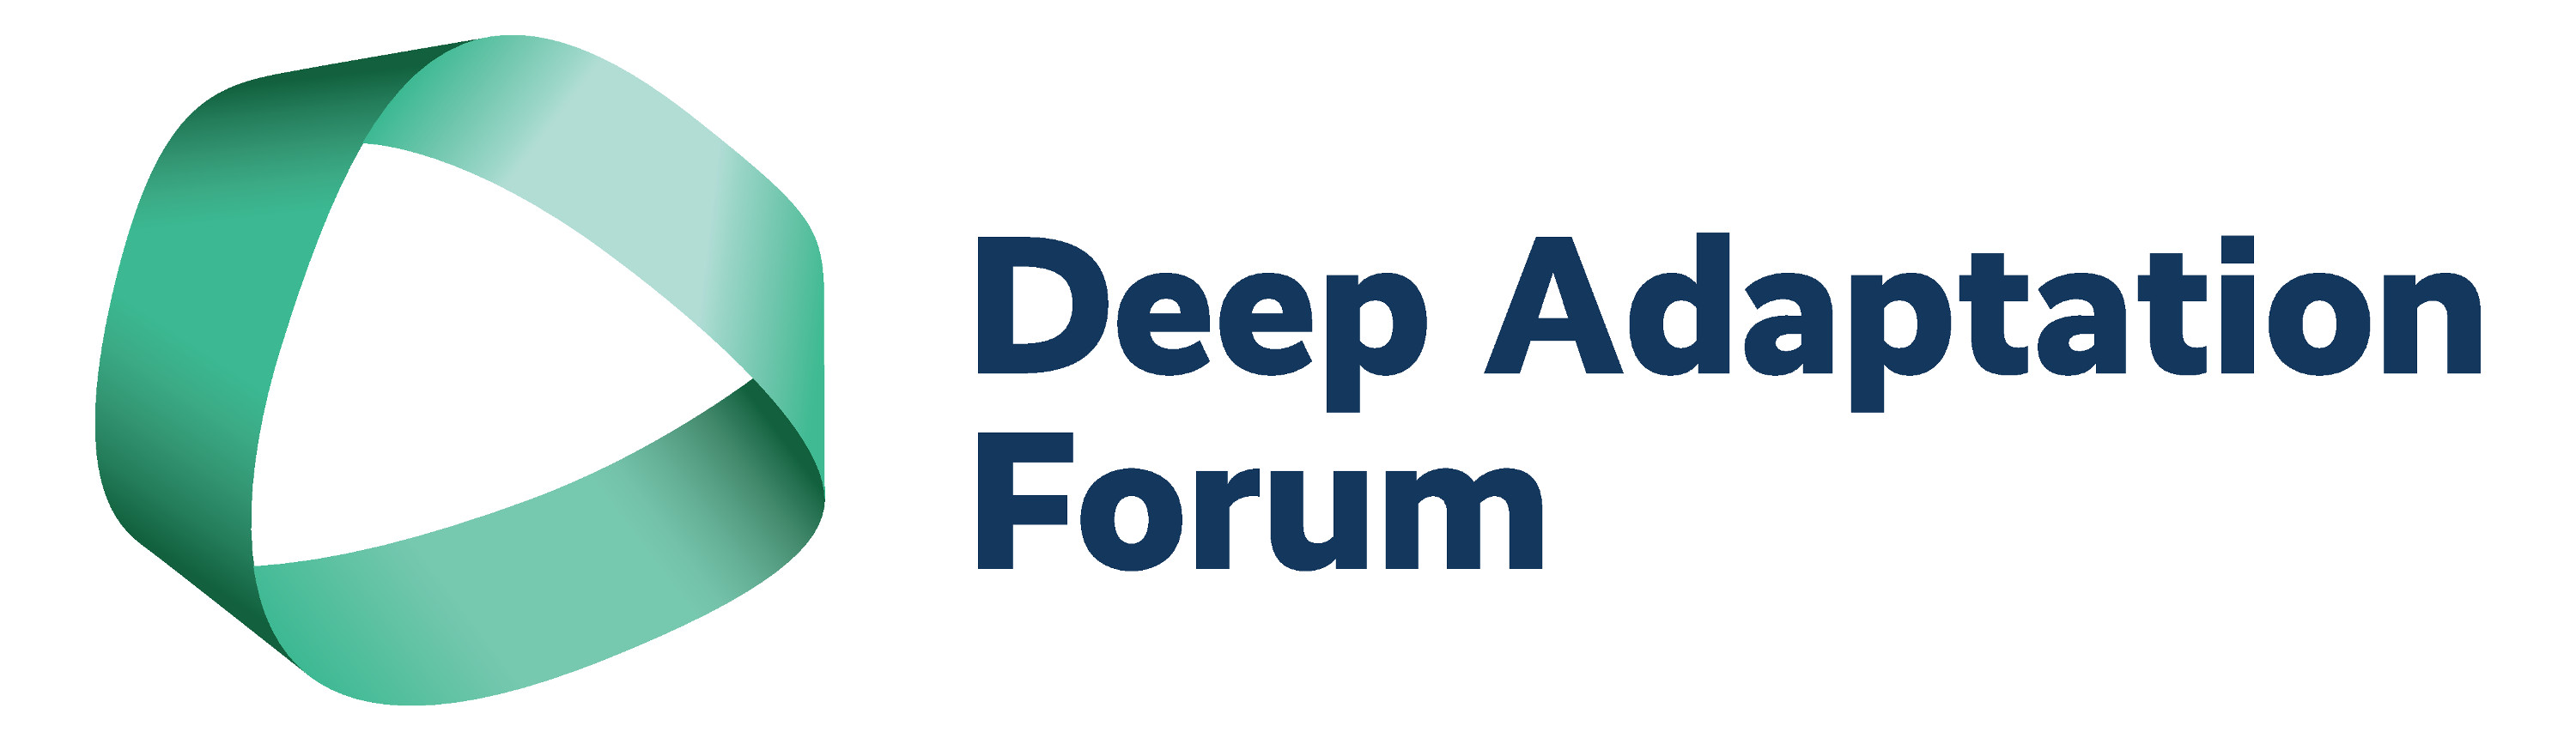 Deep Adaptation Forum logo